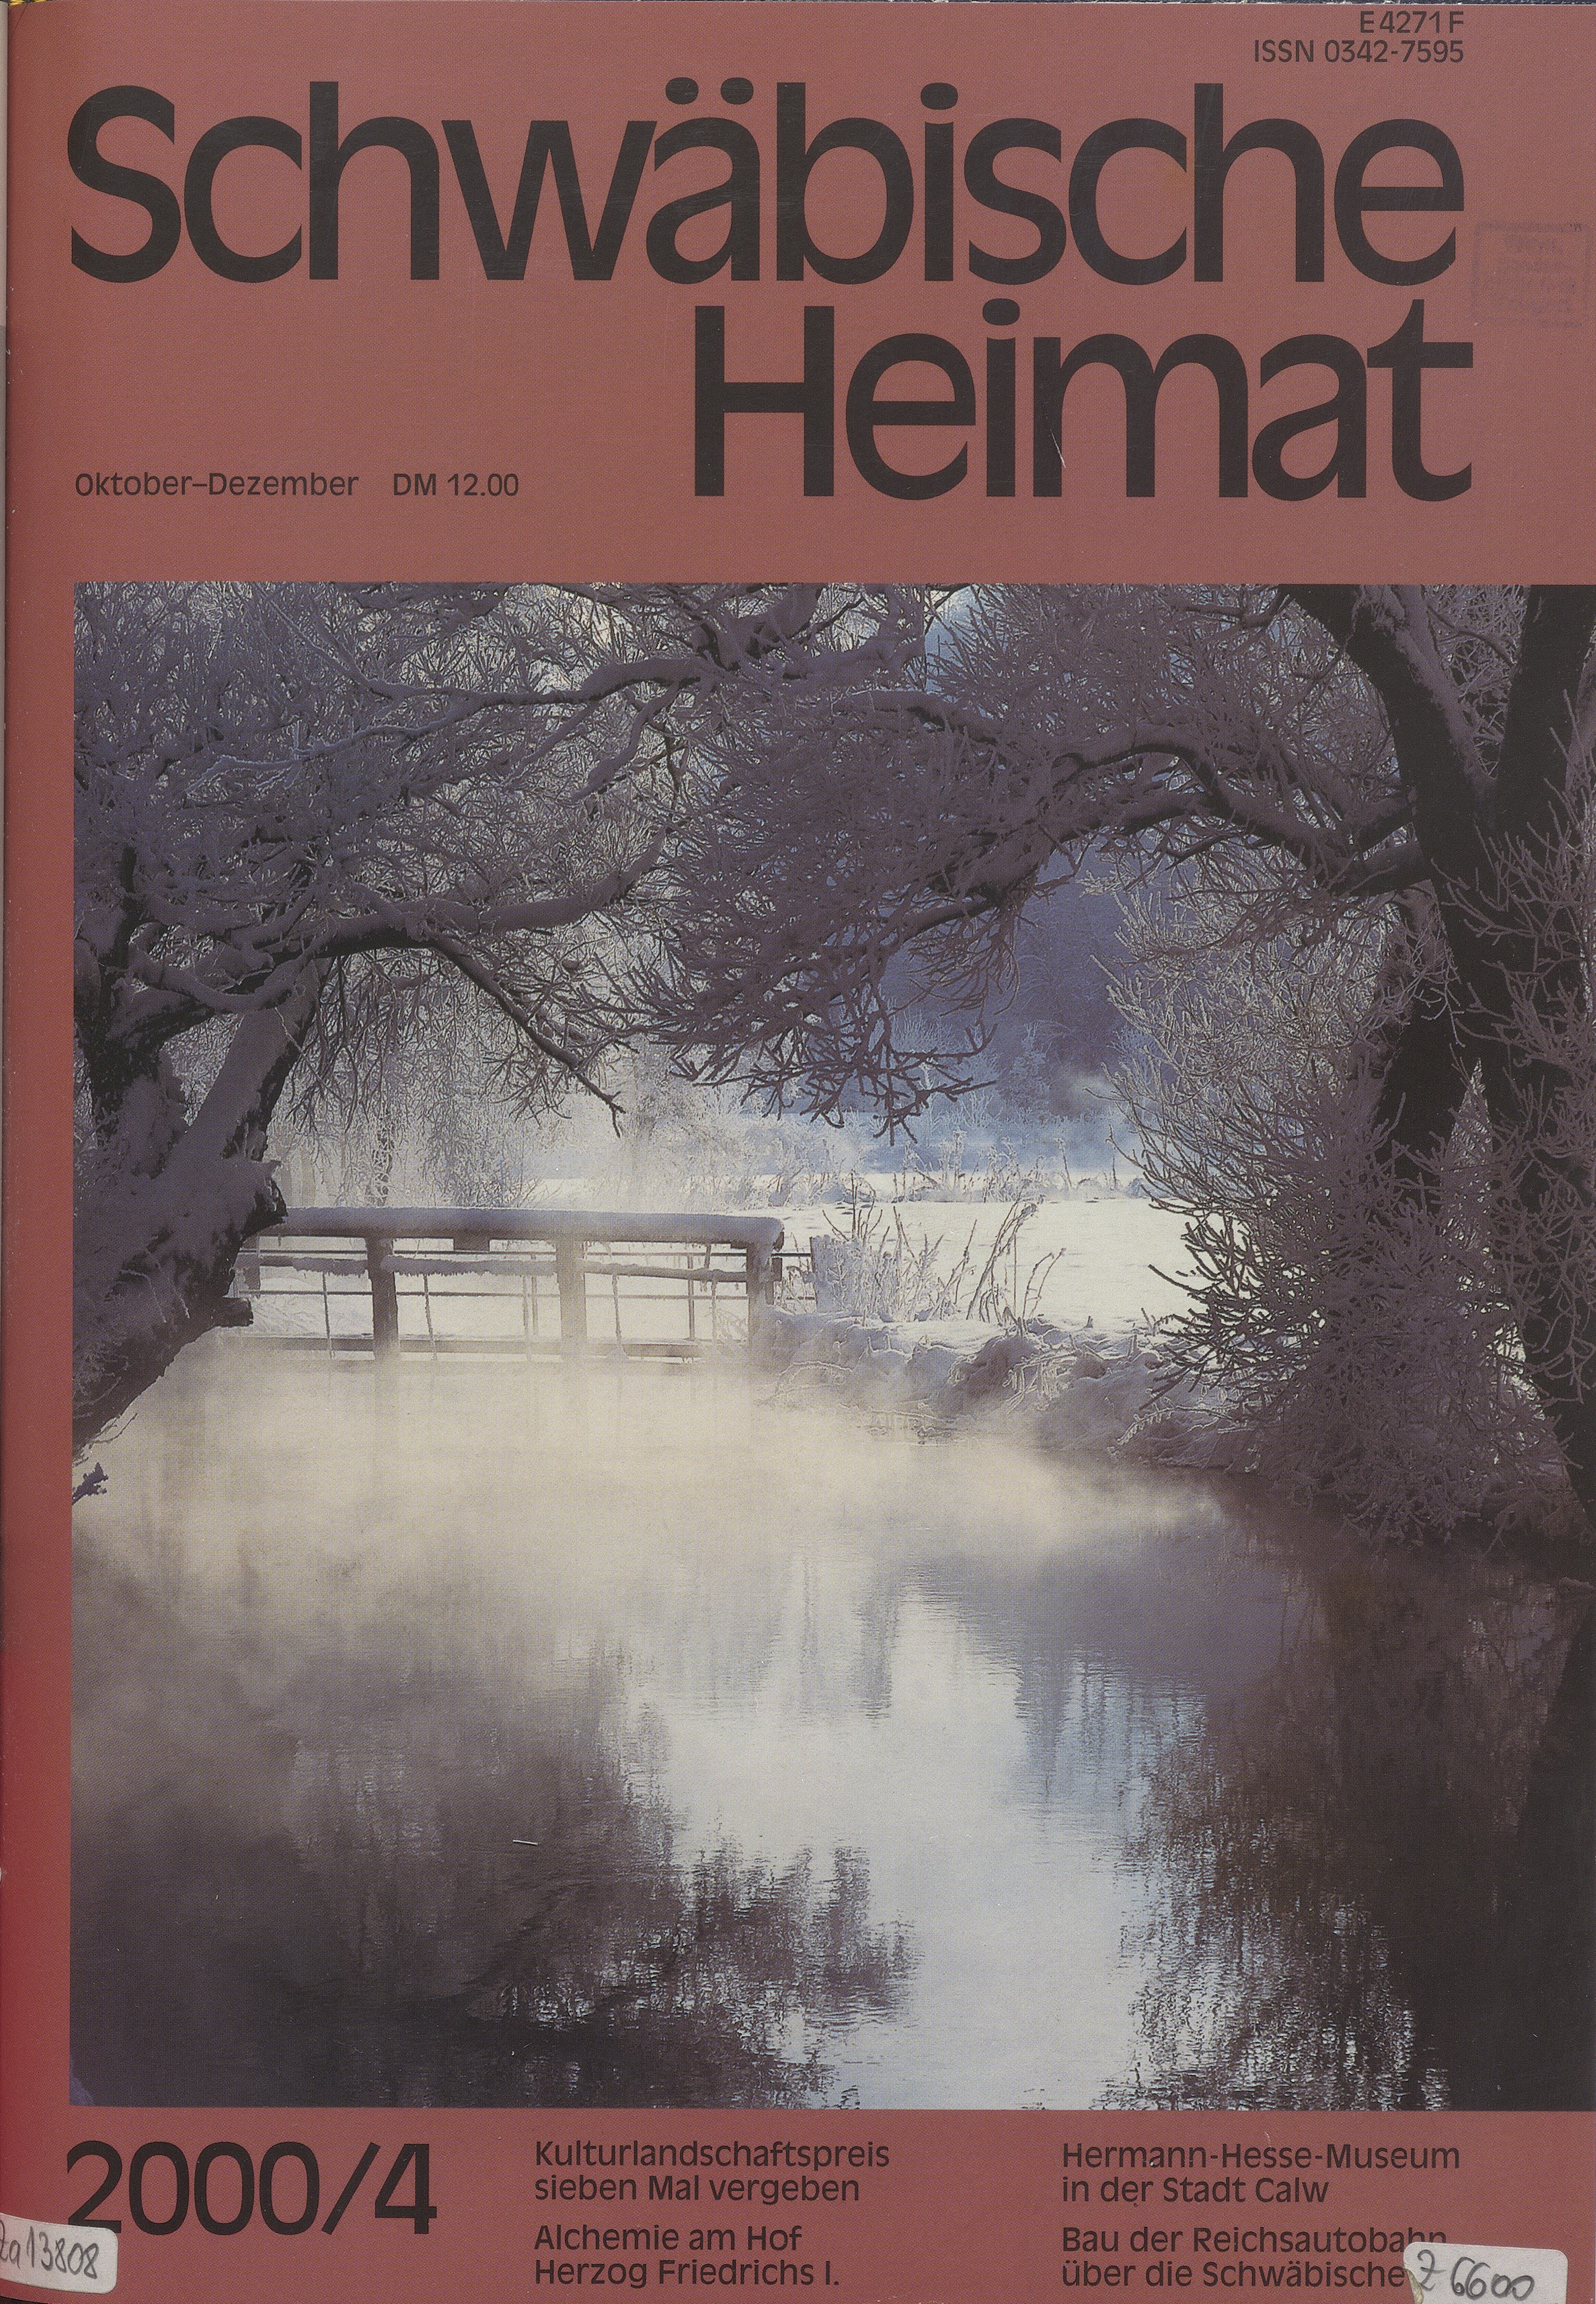                     Ansehen Bd. 51 Nr. 4 (2000): Schwäbische Heimat
                